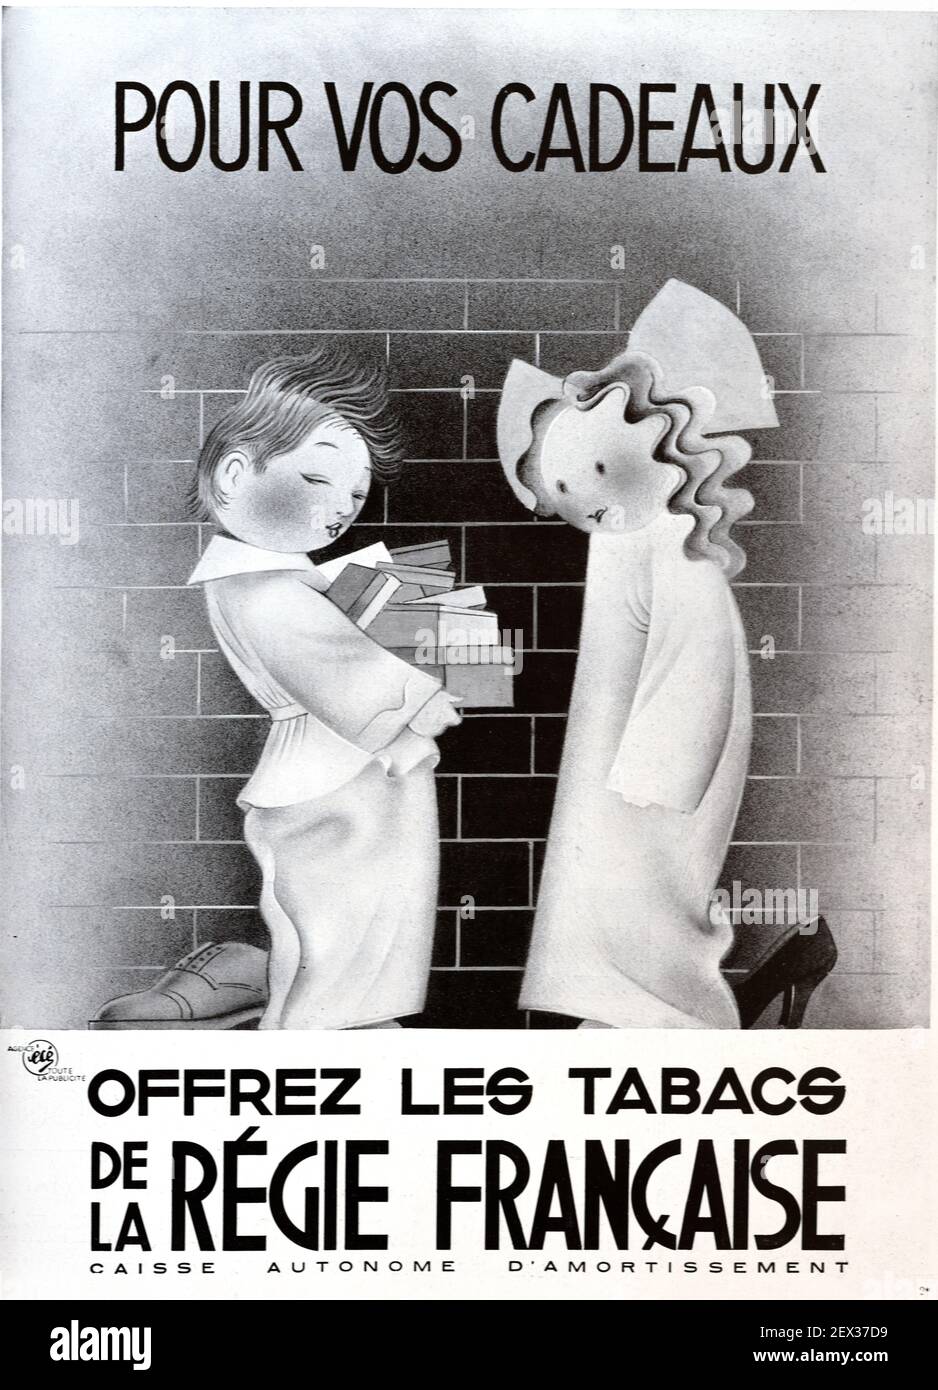 Publicité, publicité ou publicité vintage encourageant les enfants à offrir du tabac en cadeau, en cadeau ou en cadeau. Illustration politiquement incorrecte de 1931 France Banque D'Images